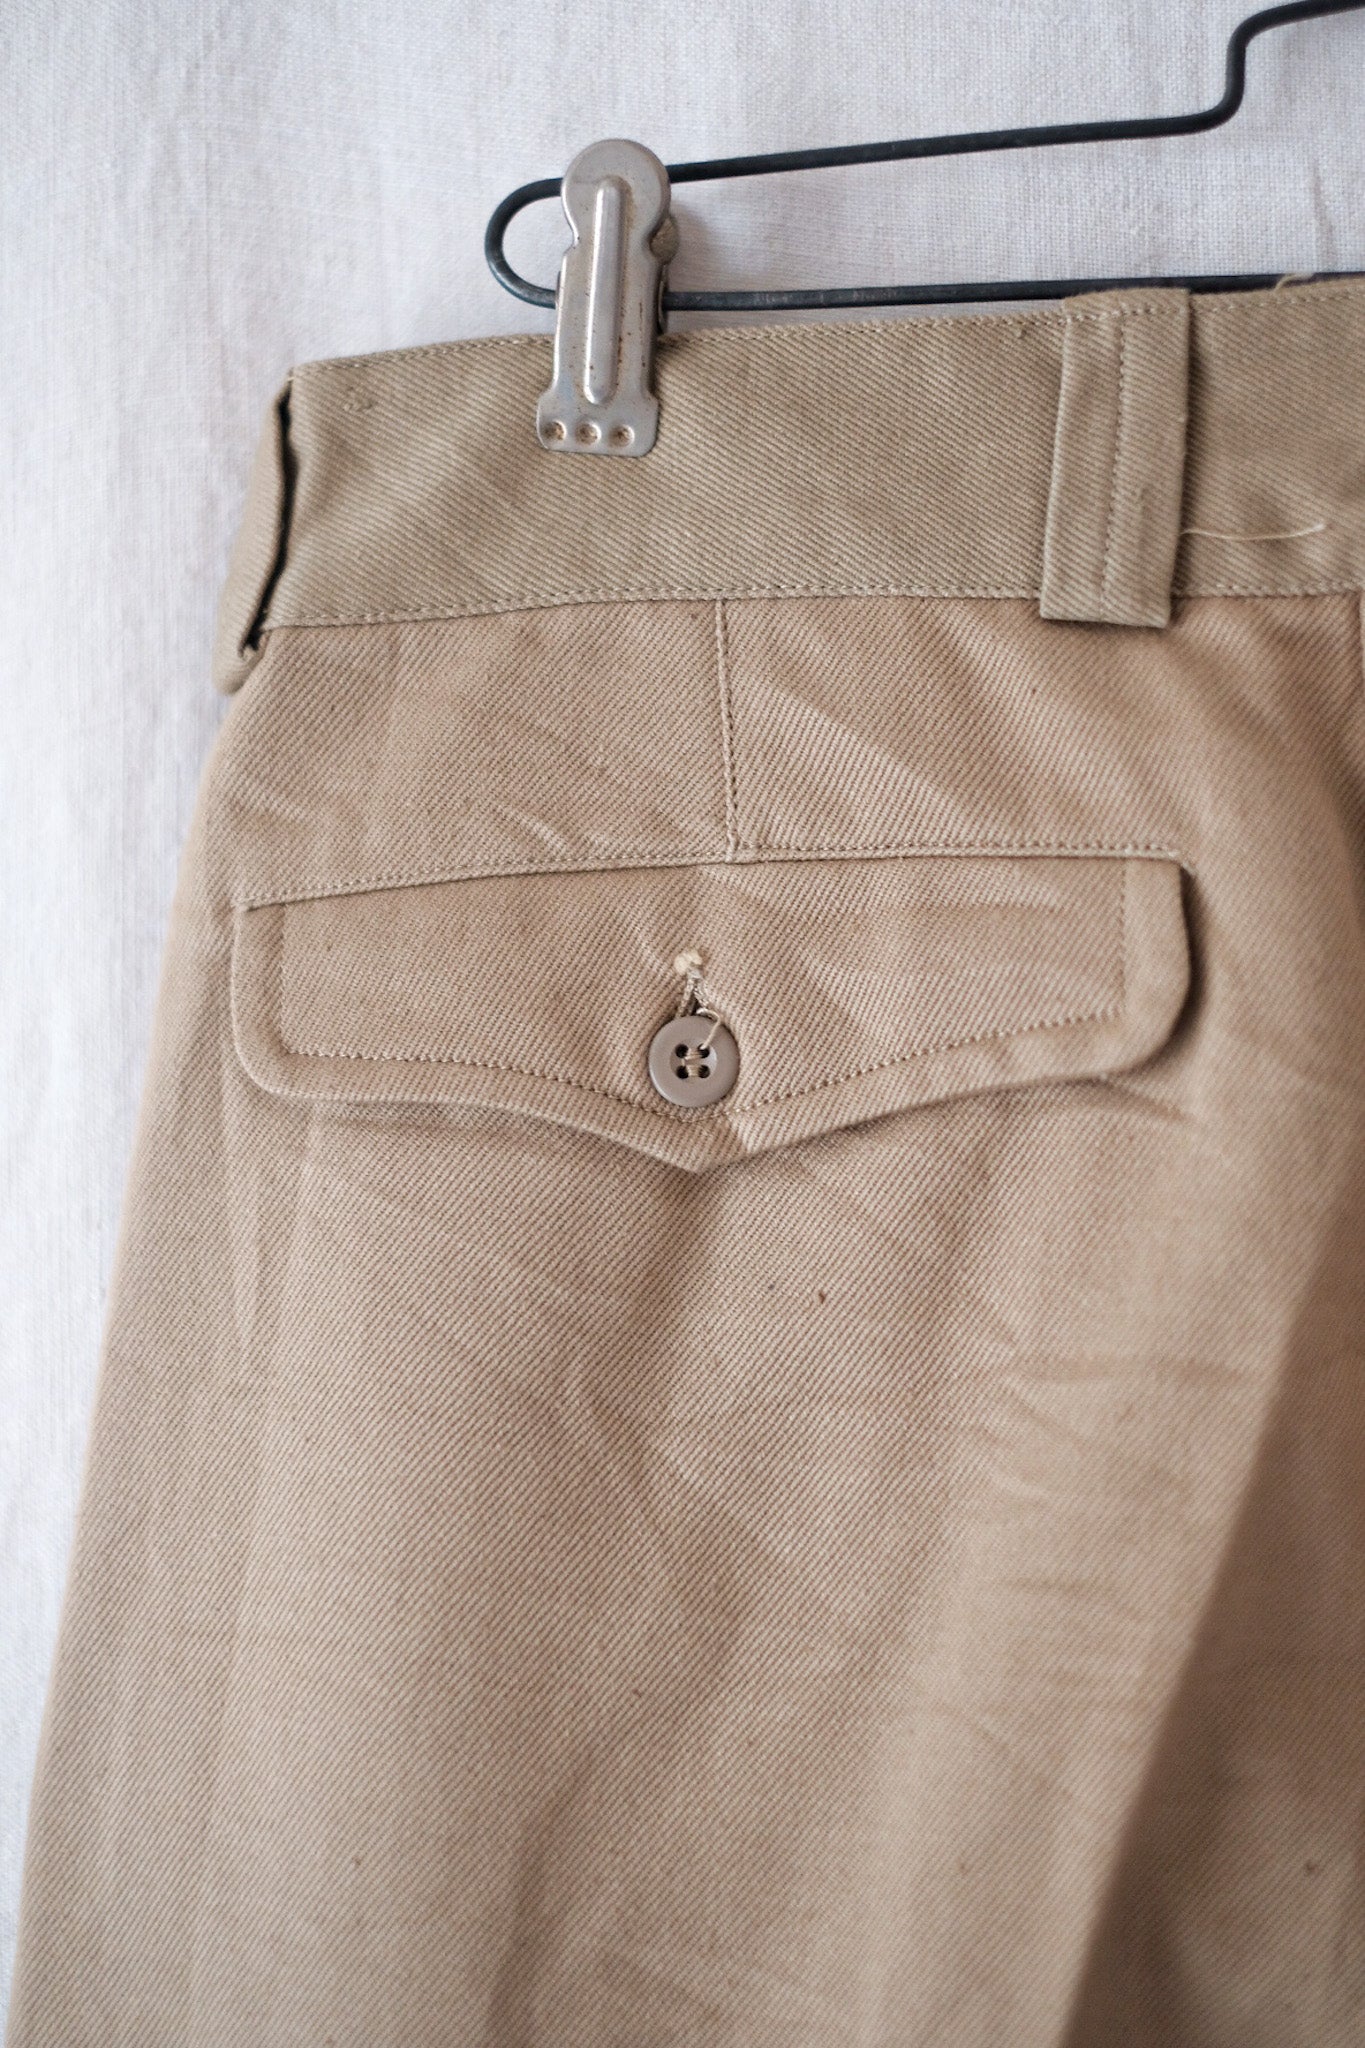 [〜60年代]法國軍隊M52 Chino褲子的大小。21“死股”